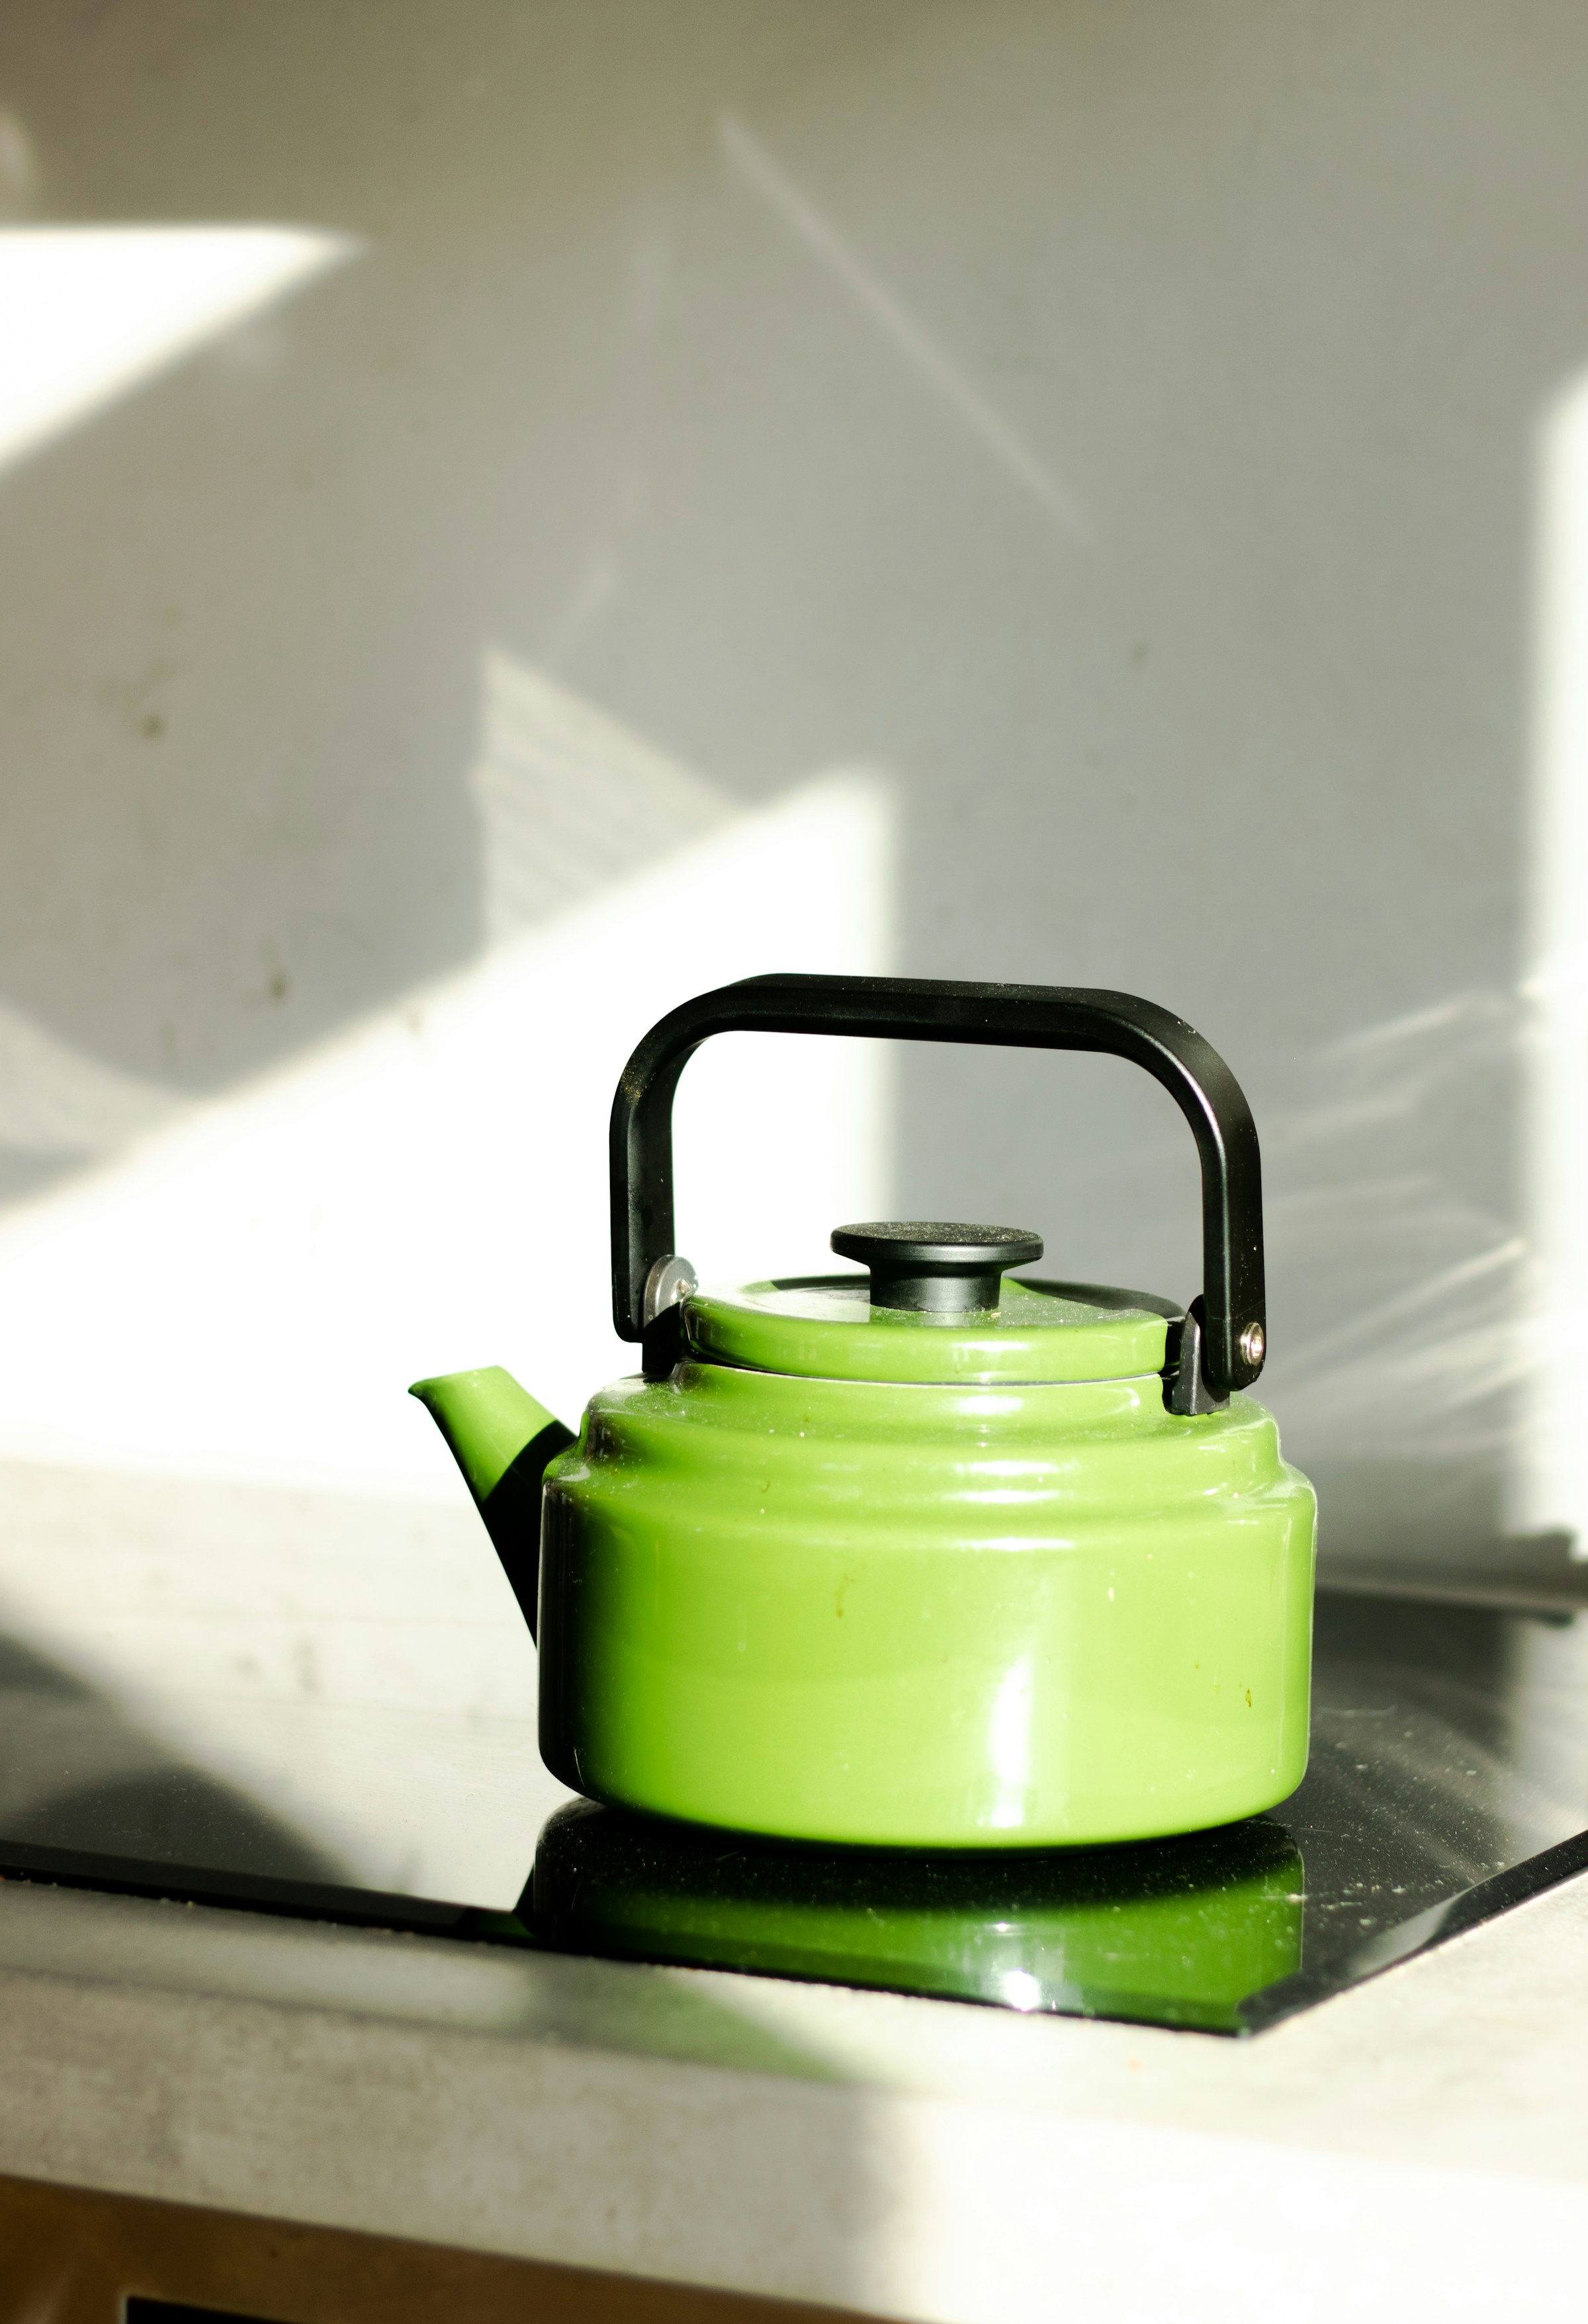 Une bouilloire verte sur la cuisinière | Source : Unsplash